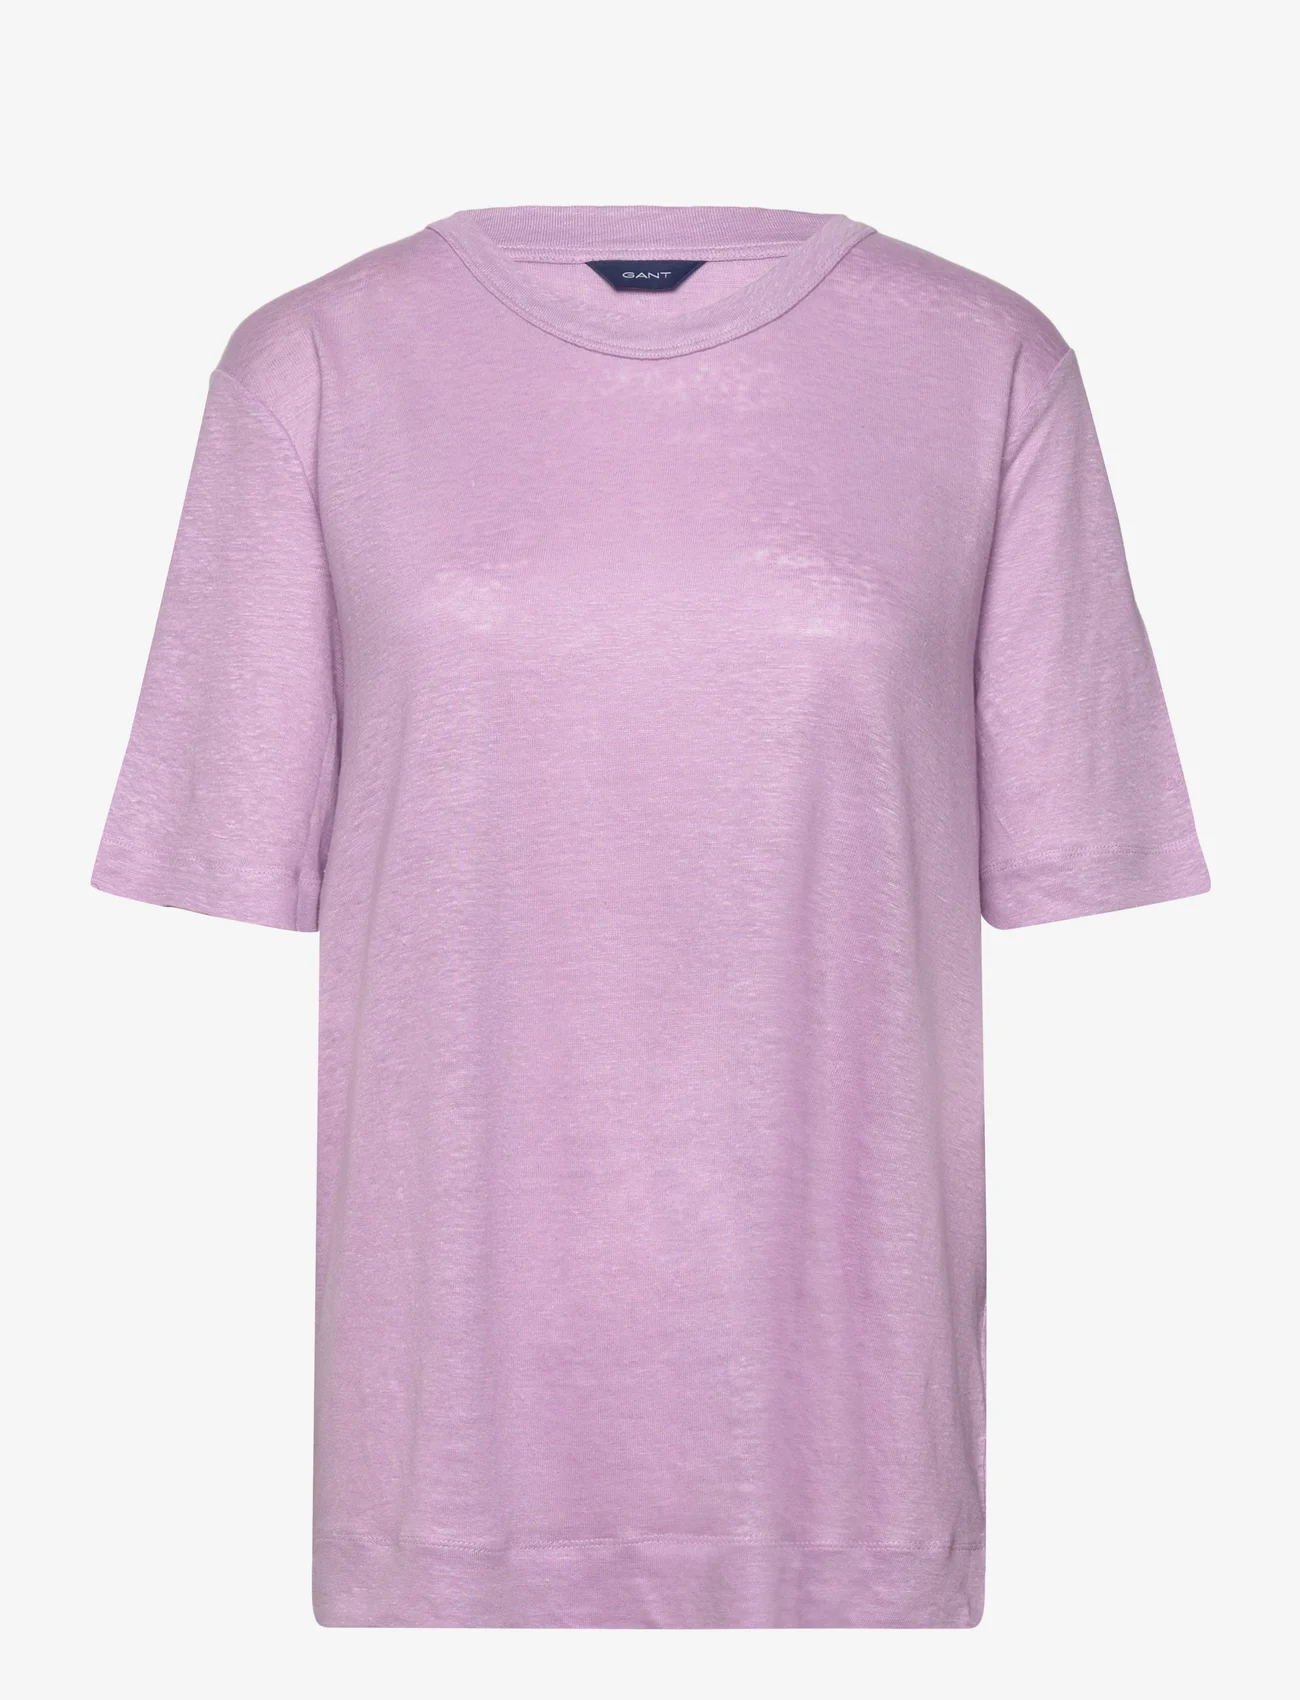 GANT - D2. LINEN SS T-SHIRT - t-shirts - crocus purple - 0